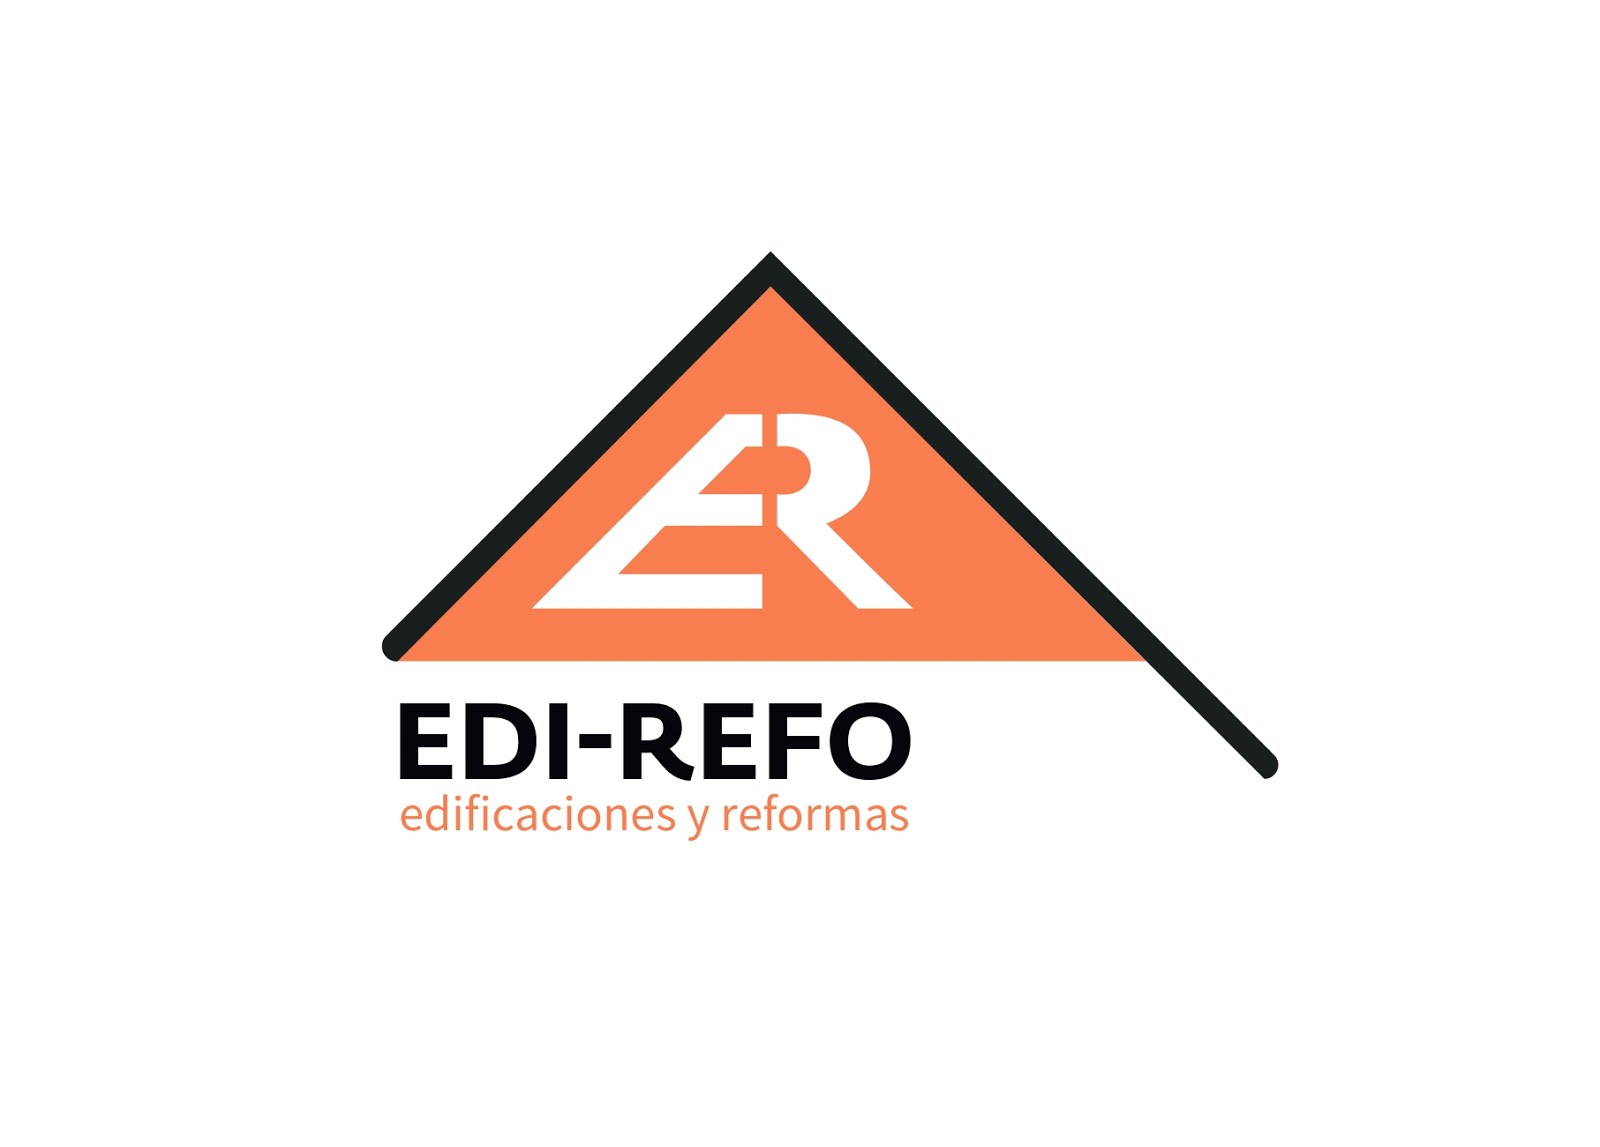 EDI- REFO  edificaciones y reformas